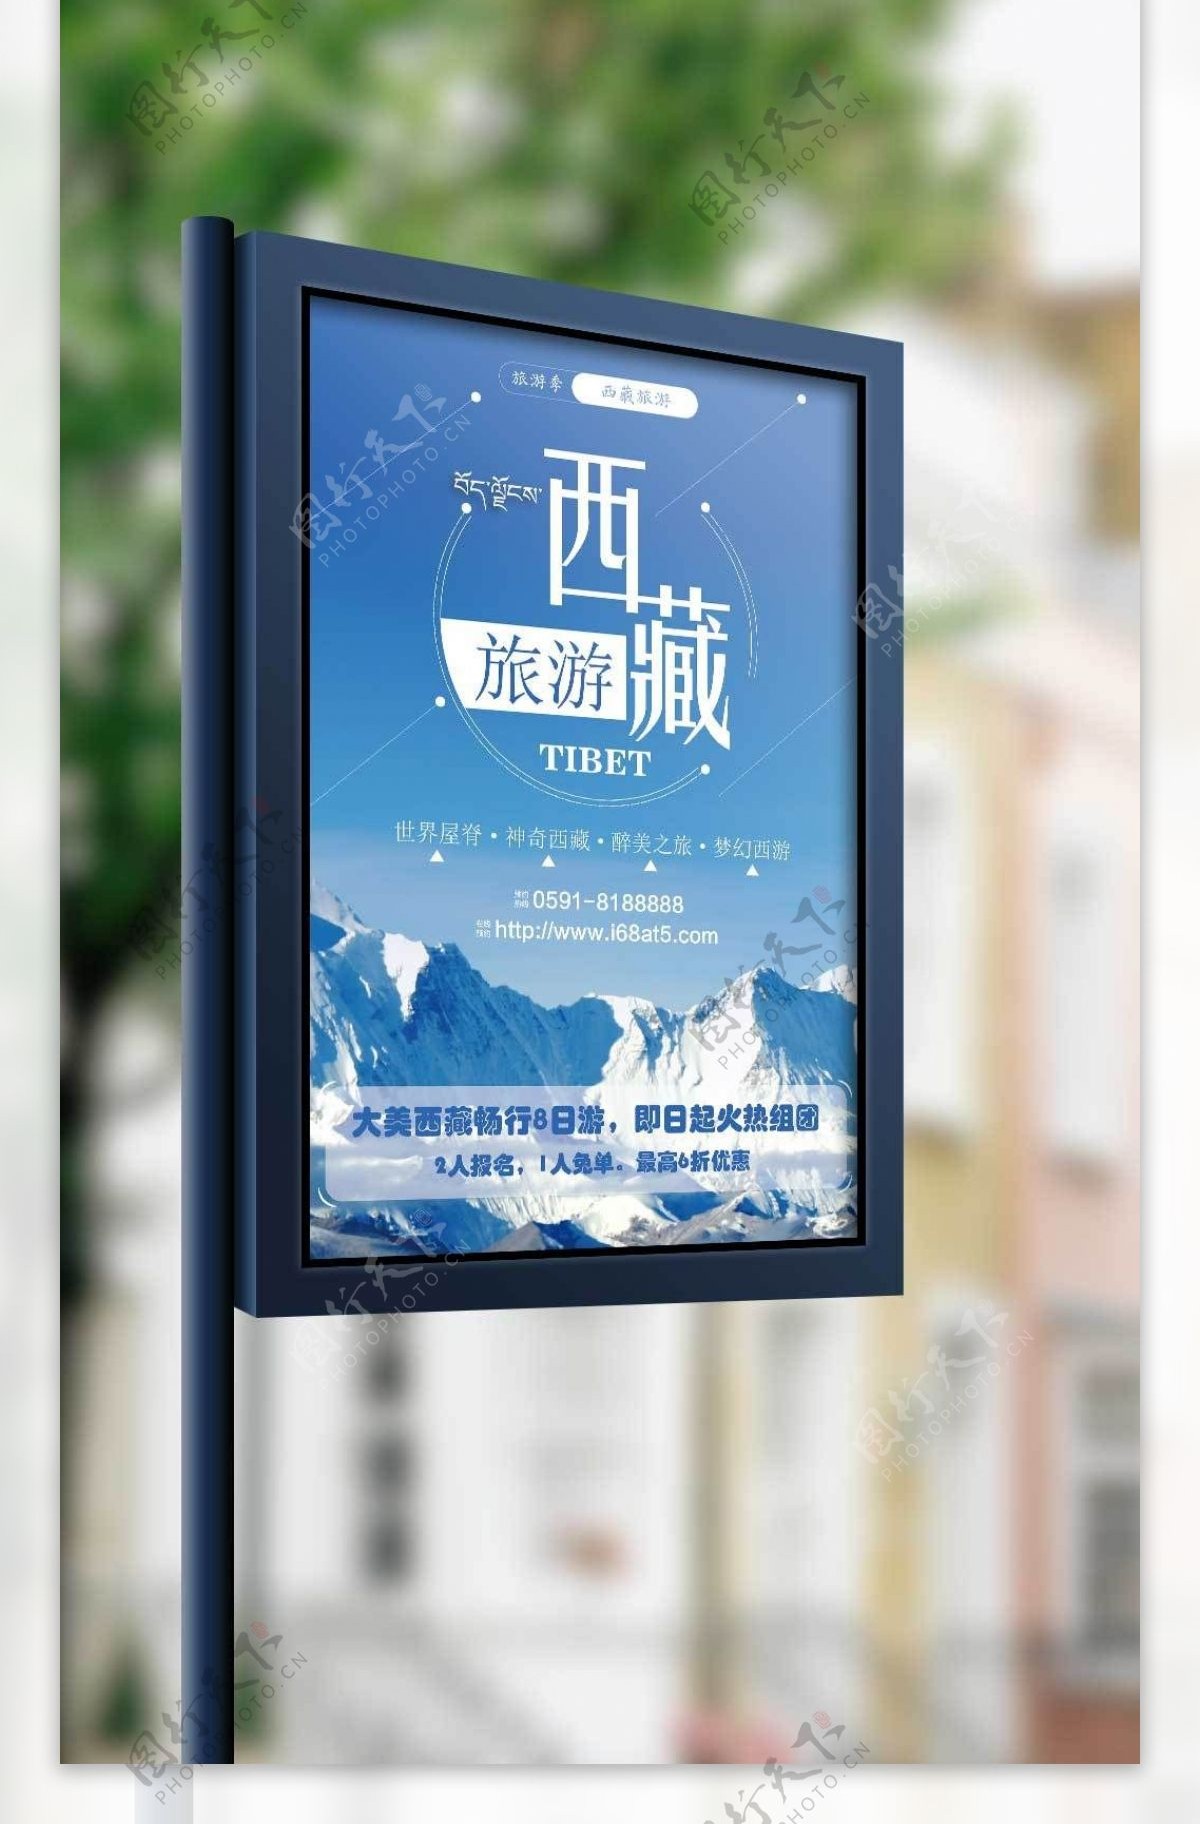 蓝色冬季西藏旅游海报